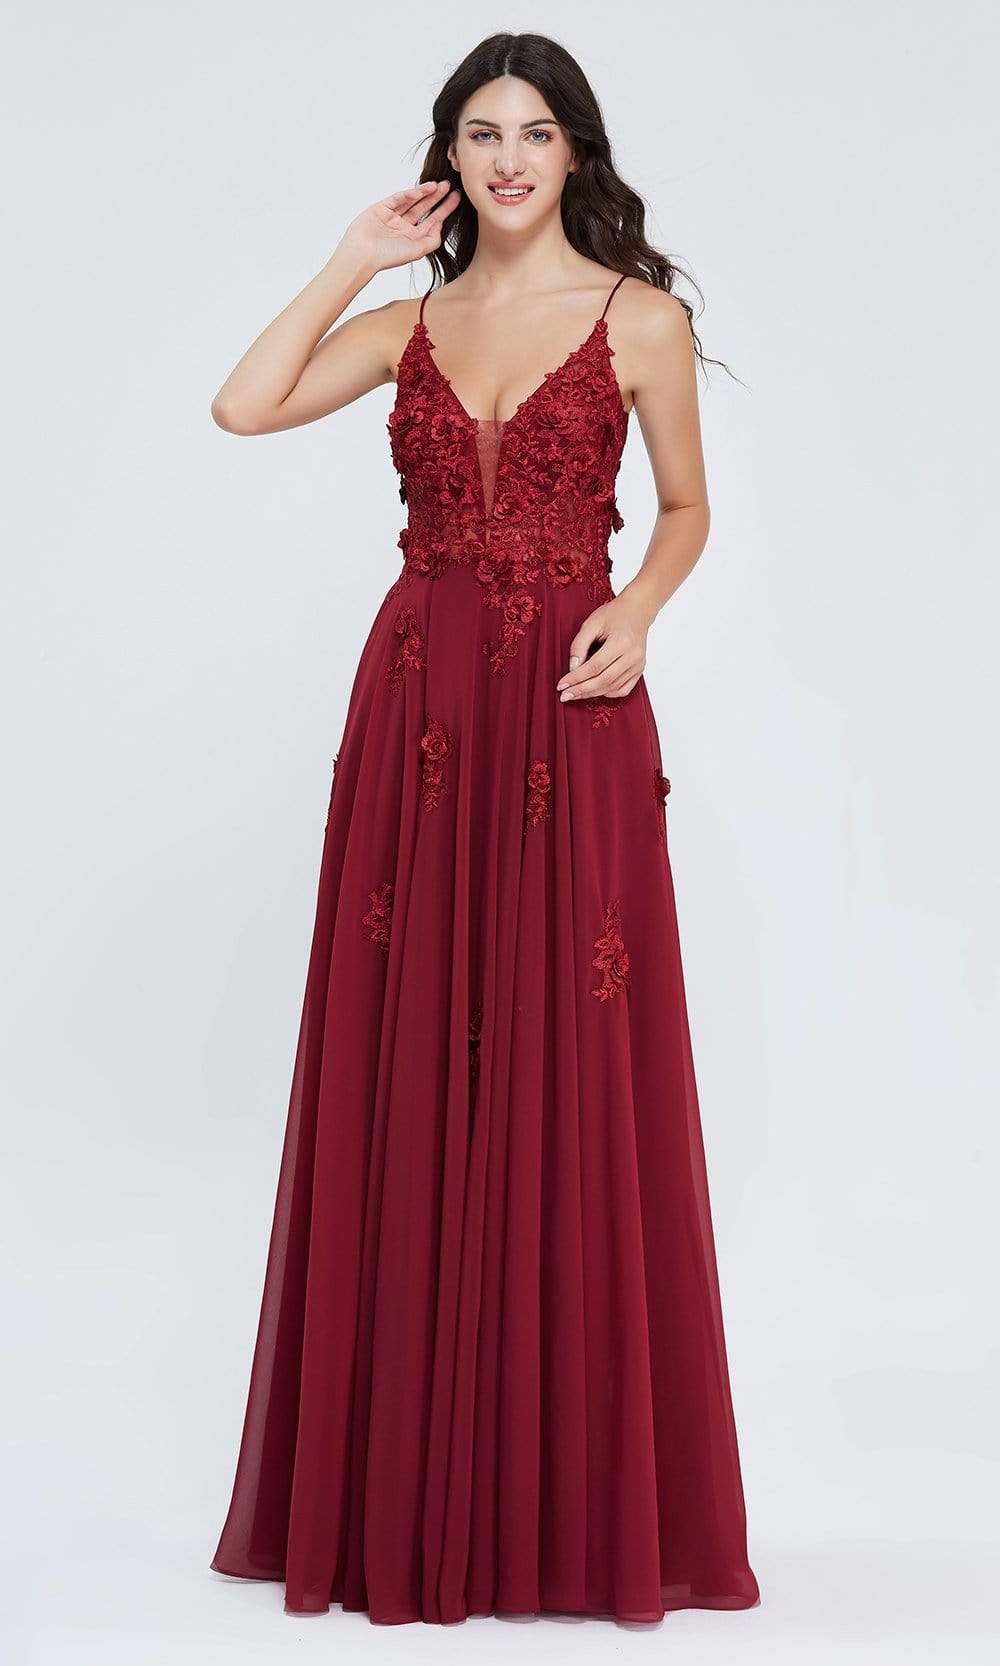 J'Adore Dresses - J20001 Floral Lace Applique Gown
